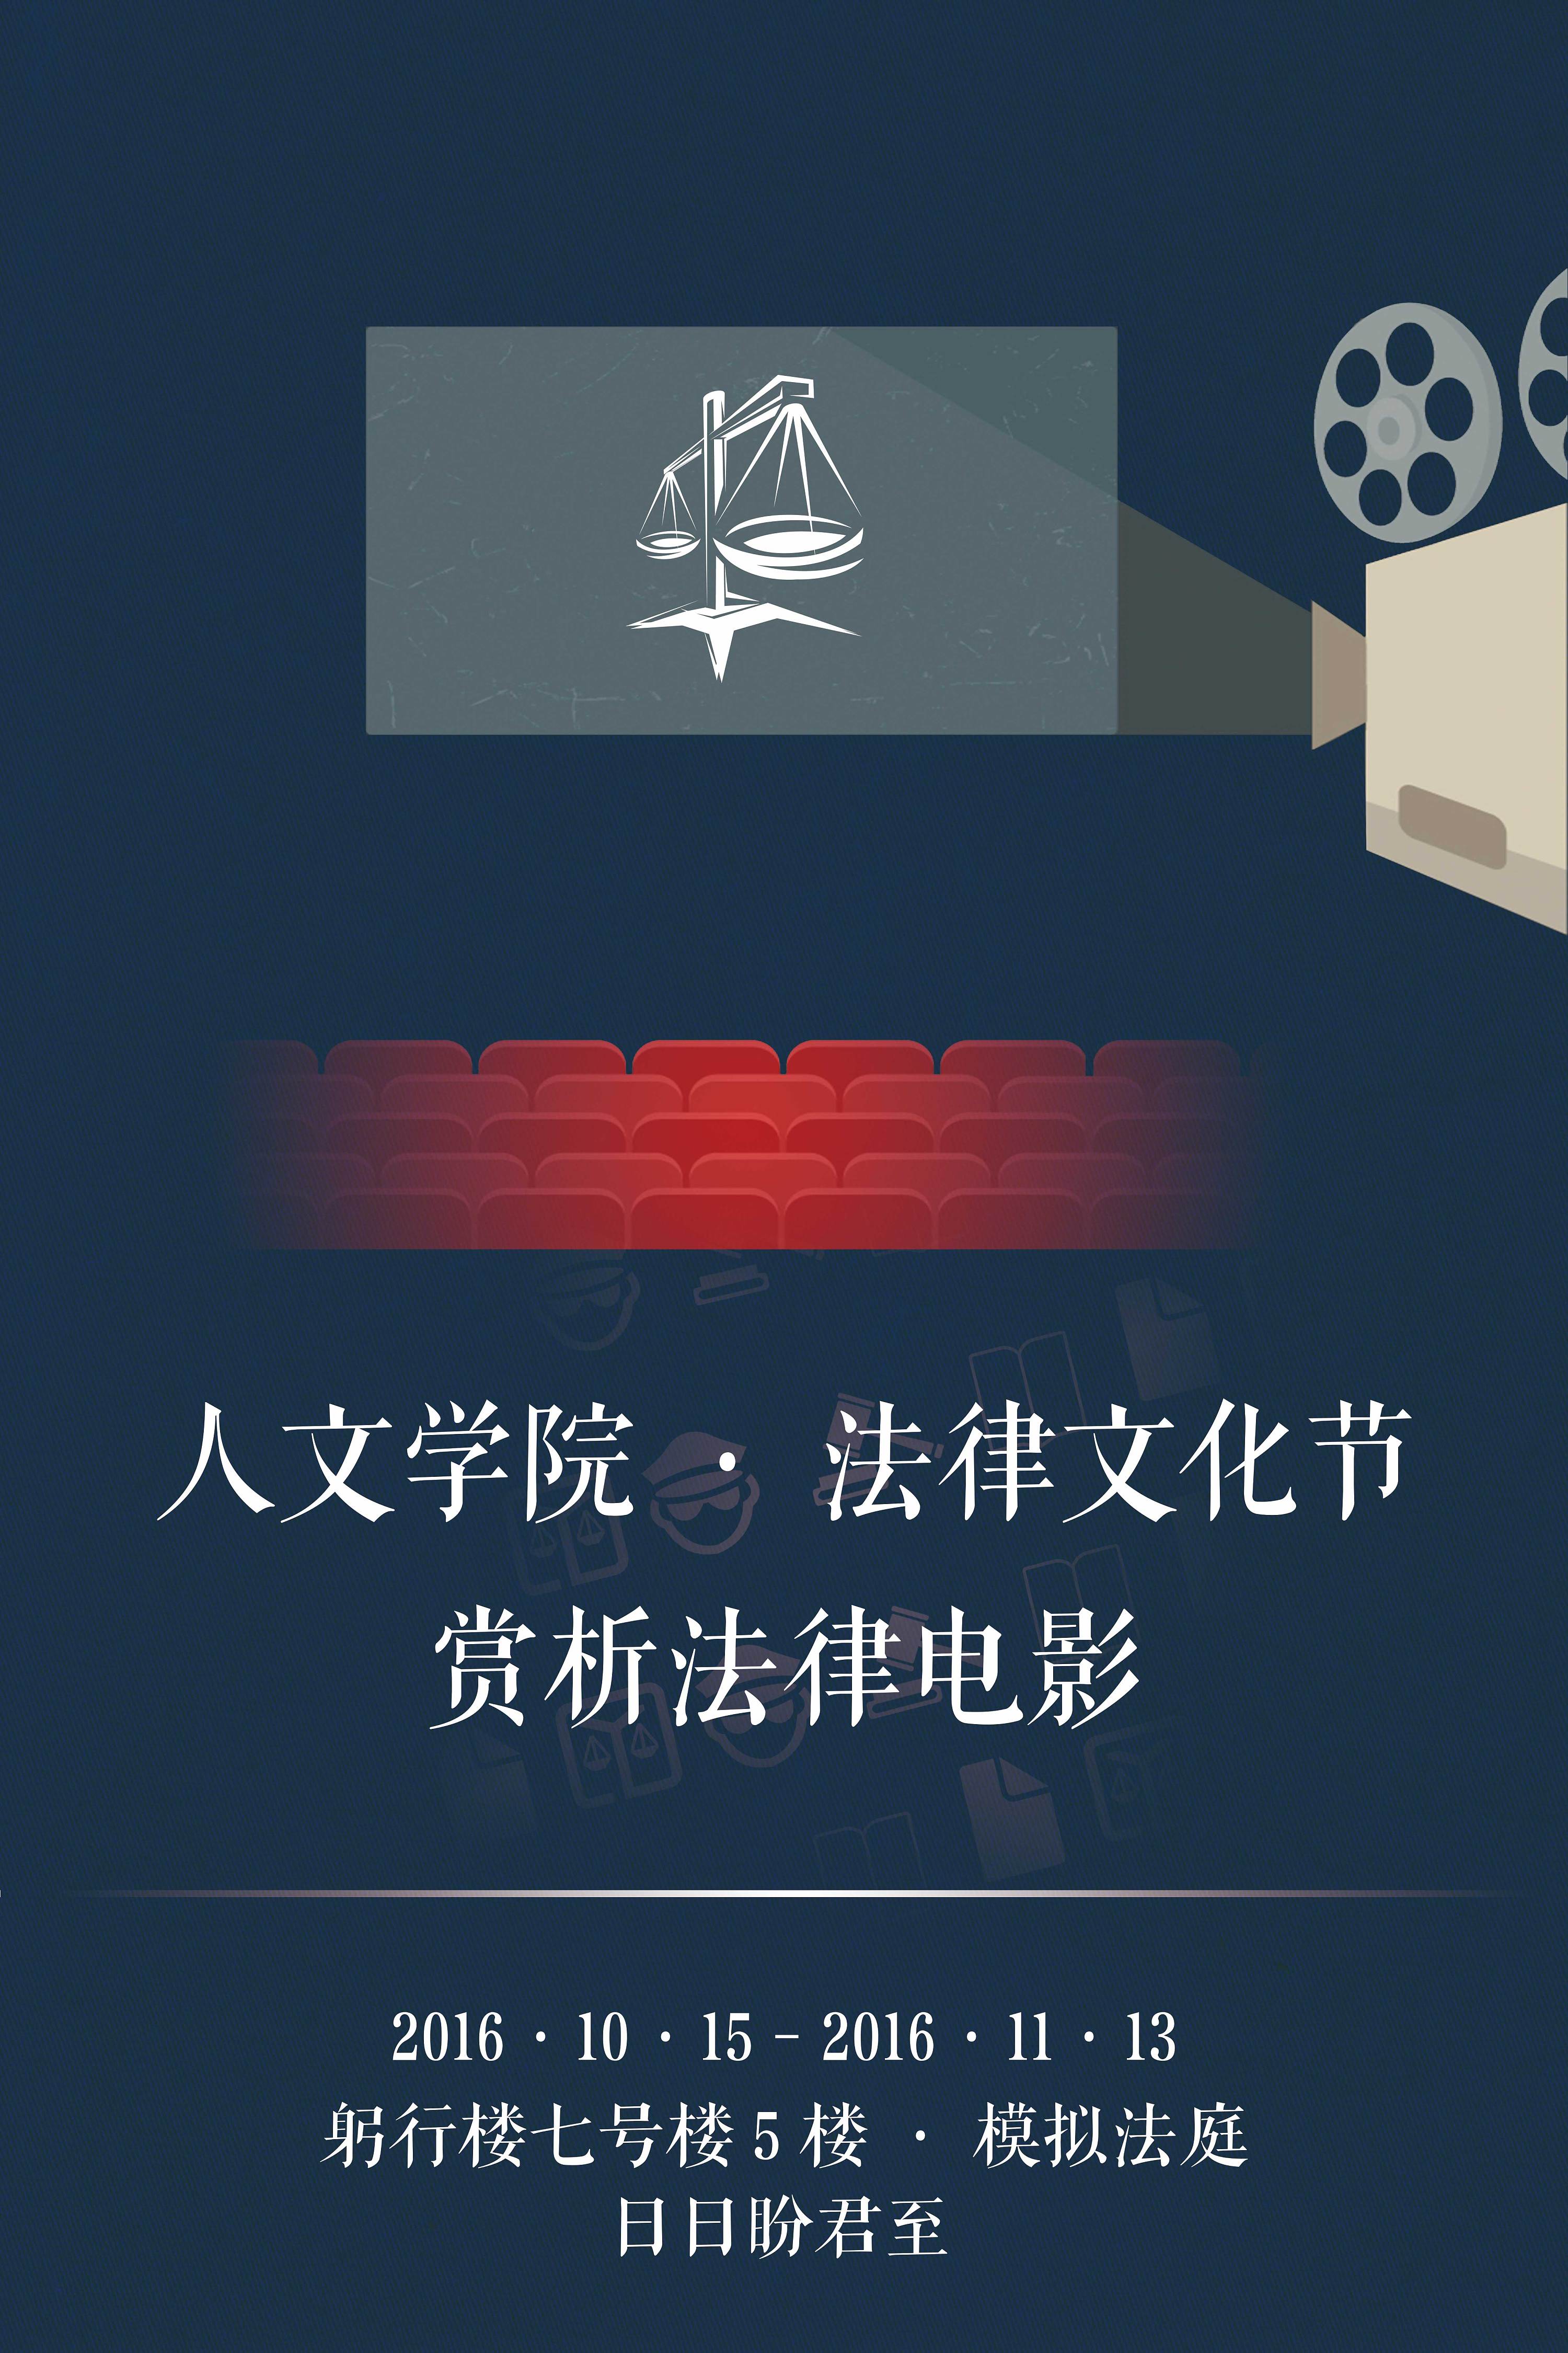 人文学院法律文化节宣传海报